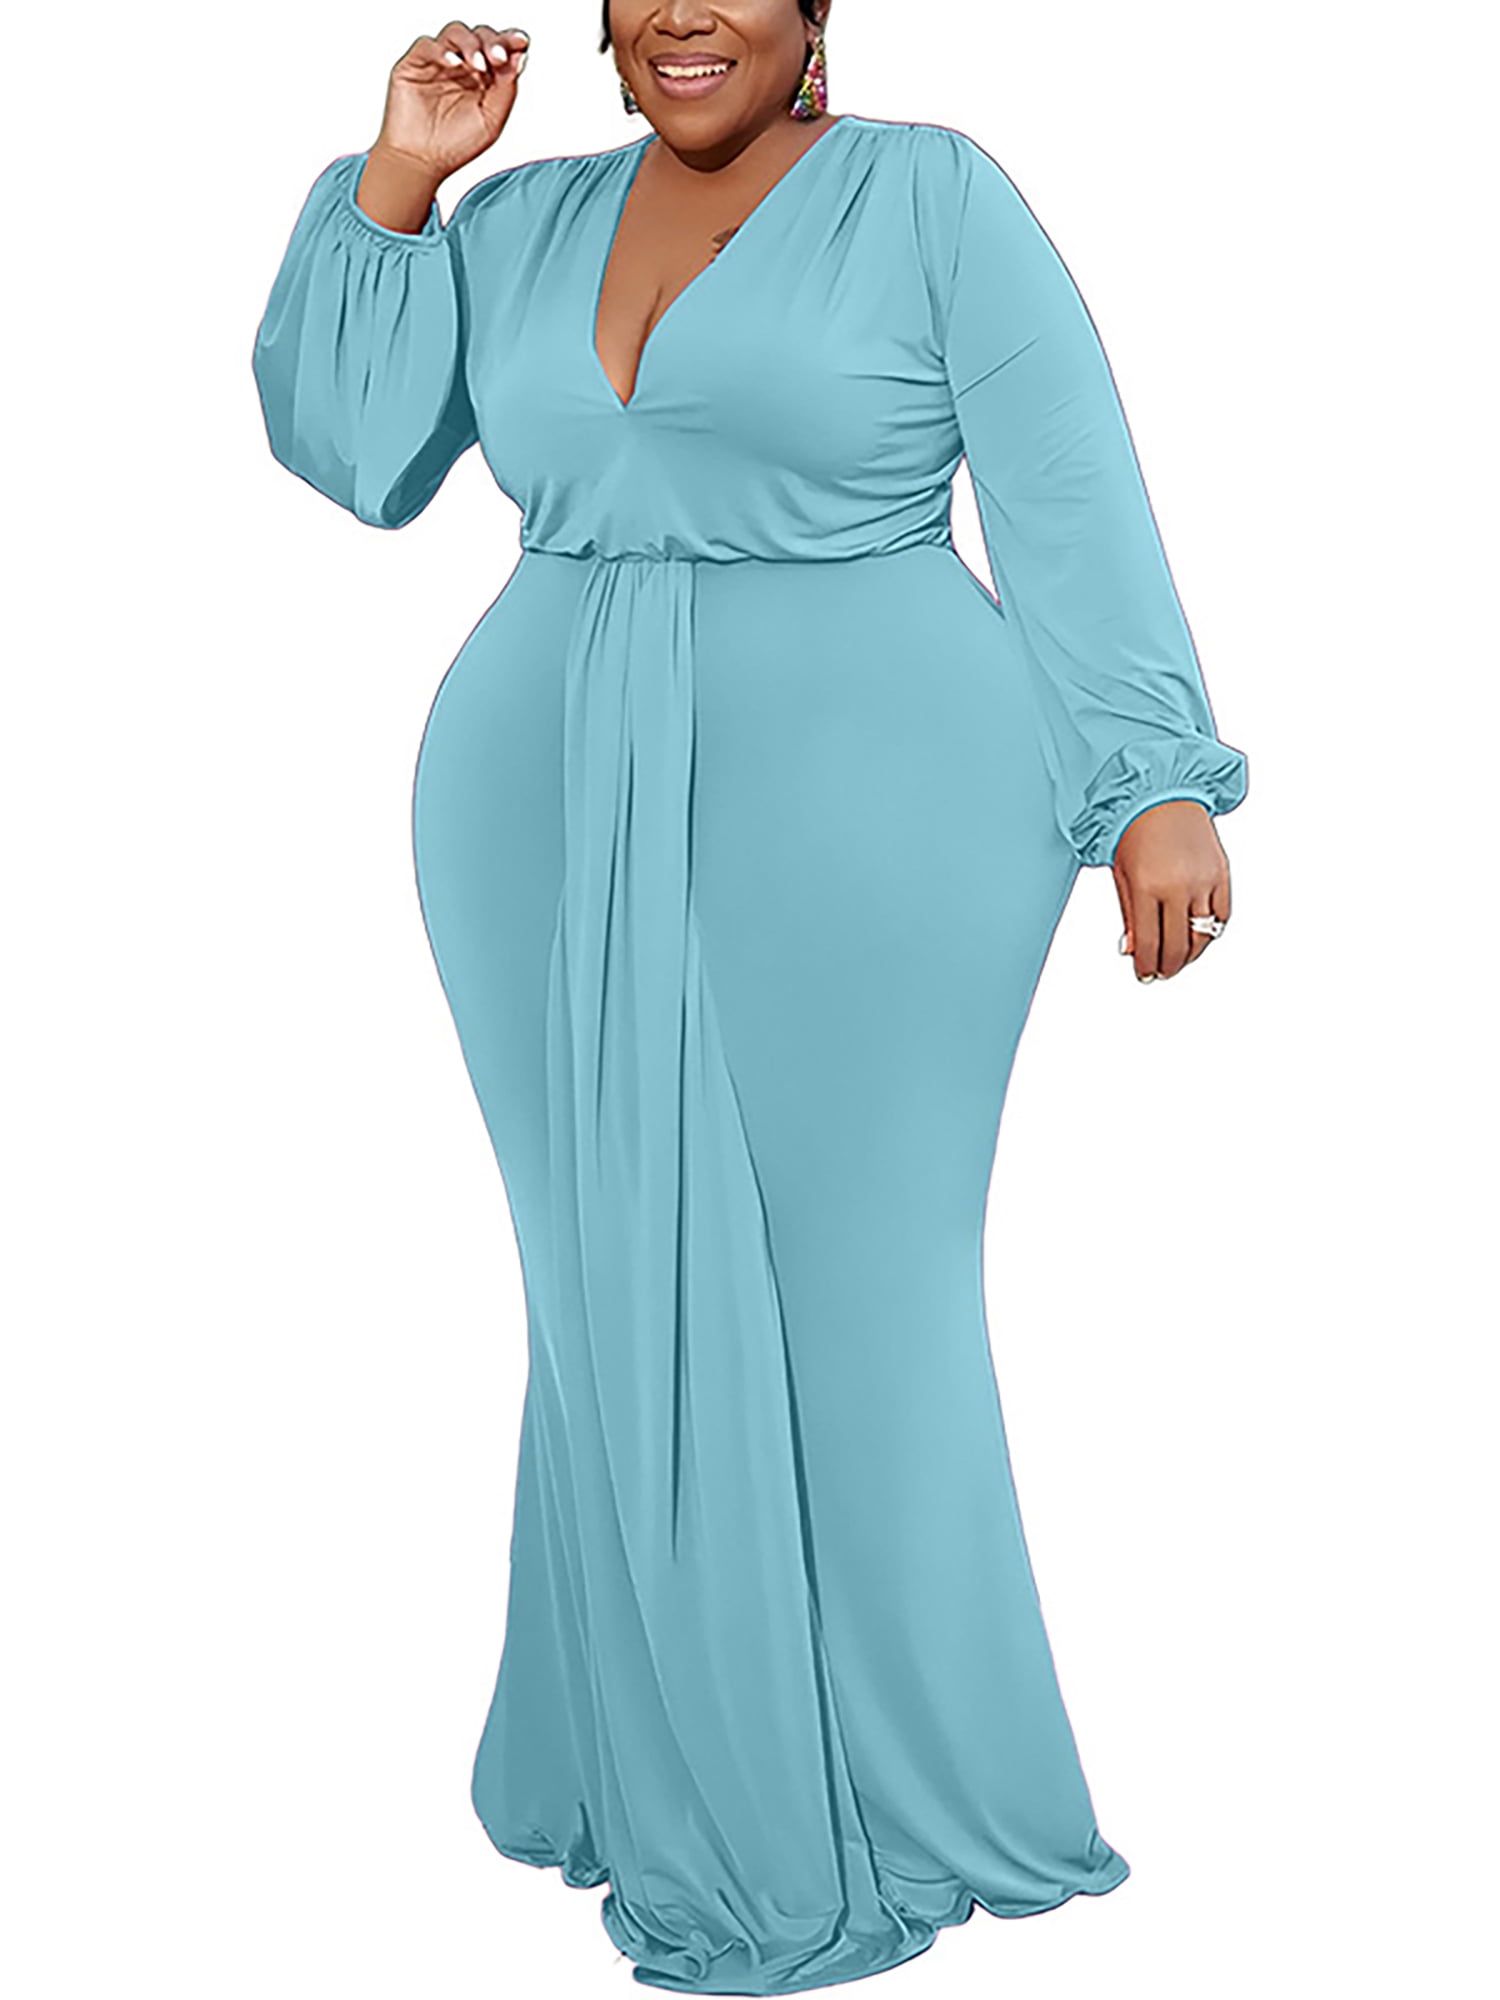 Overtræder Messing Klimatiske bjerge Niuer Women Maxi Dresses Long Sleeve Dress Plus Size Casual Loose V Neck  Light Blue 4XL - Walmart.com